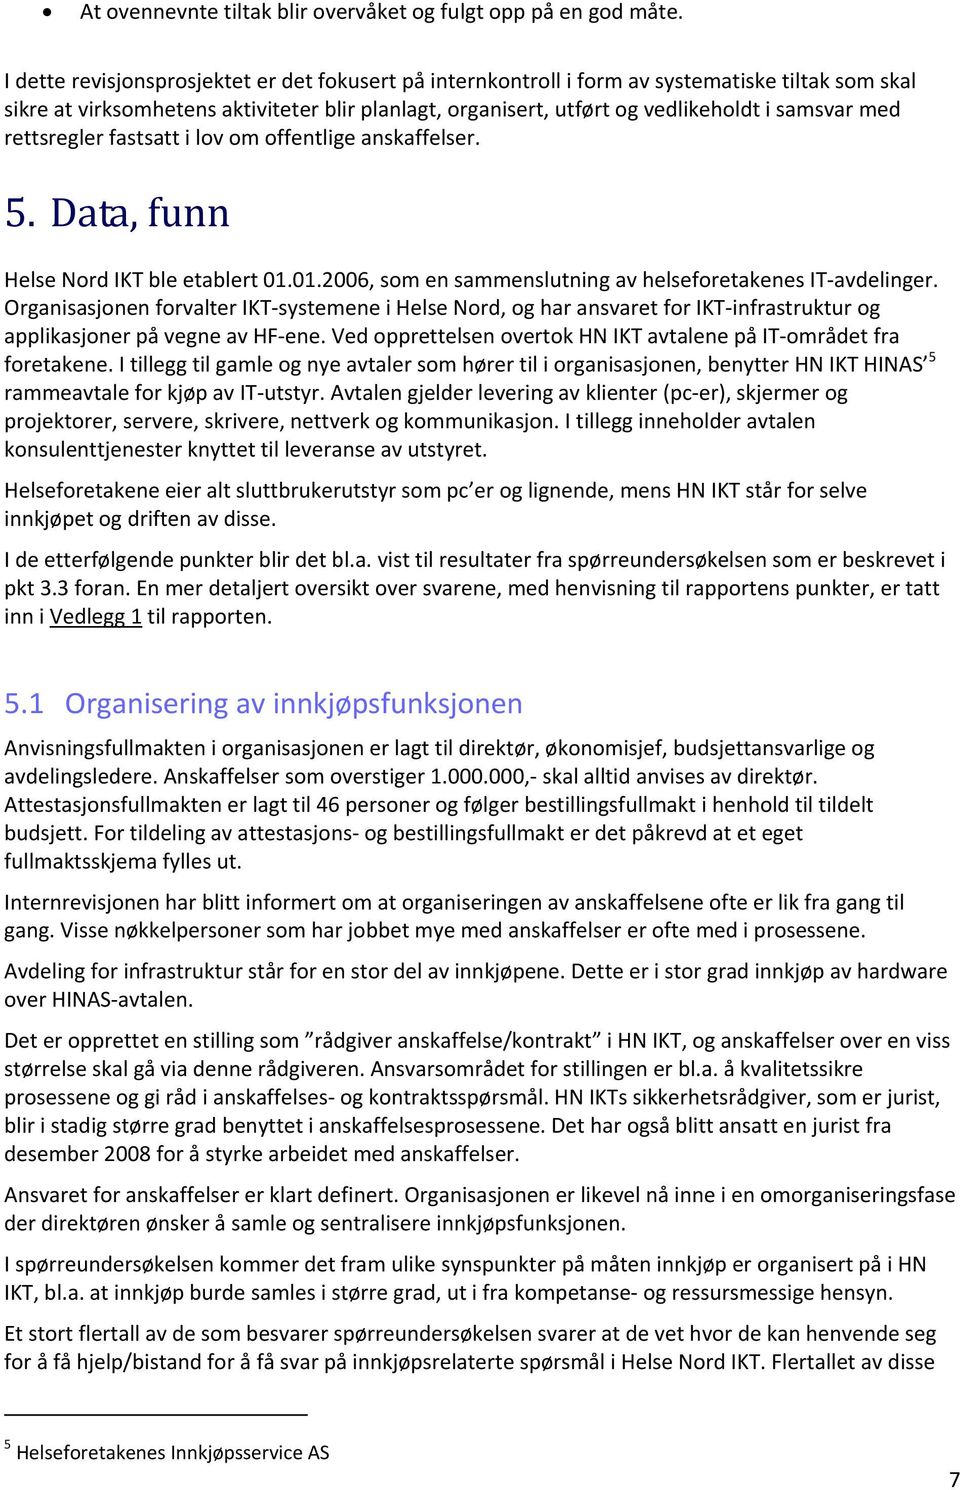 rettsregler fastsatt i lov om offentlige anskaffelser. 5. Data, funn Helse Nord IKT ble etablert 01.01.2006, som en sammenslutning av helseforetakenes IT avdelinger.